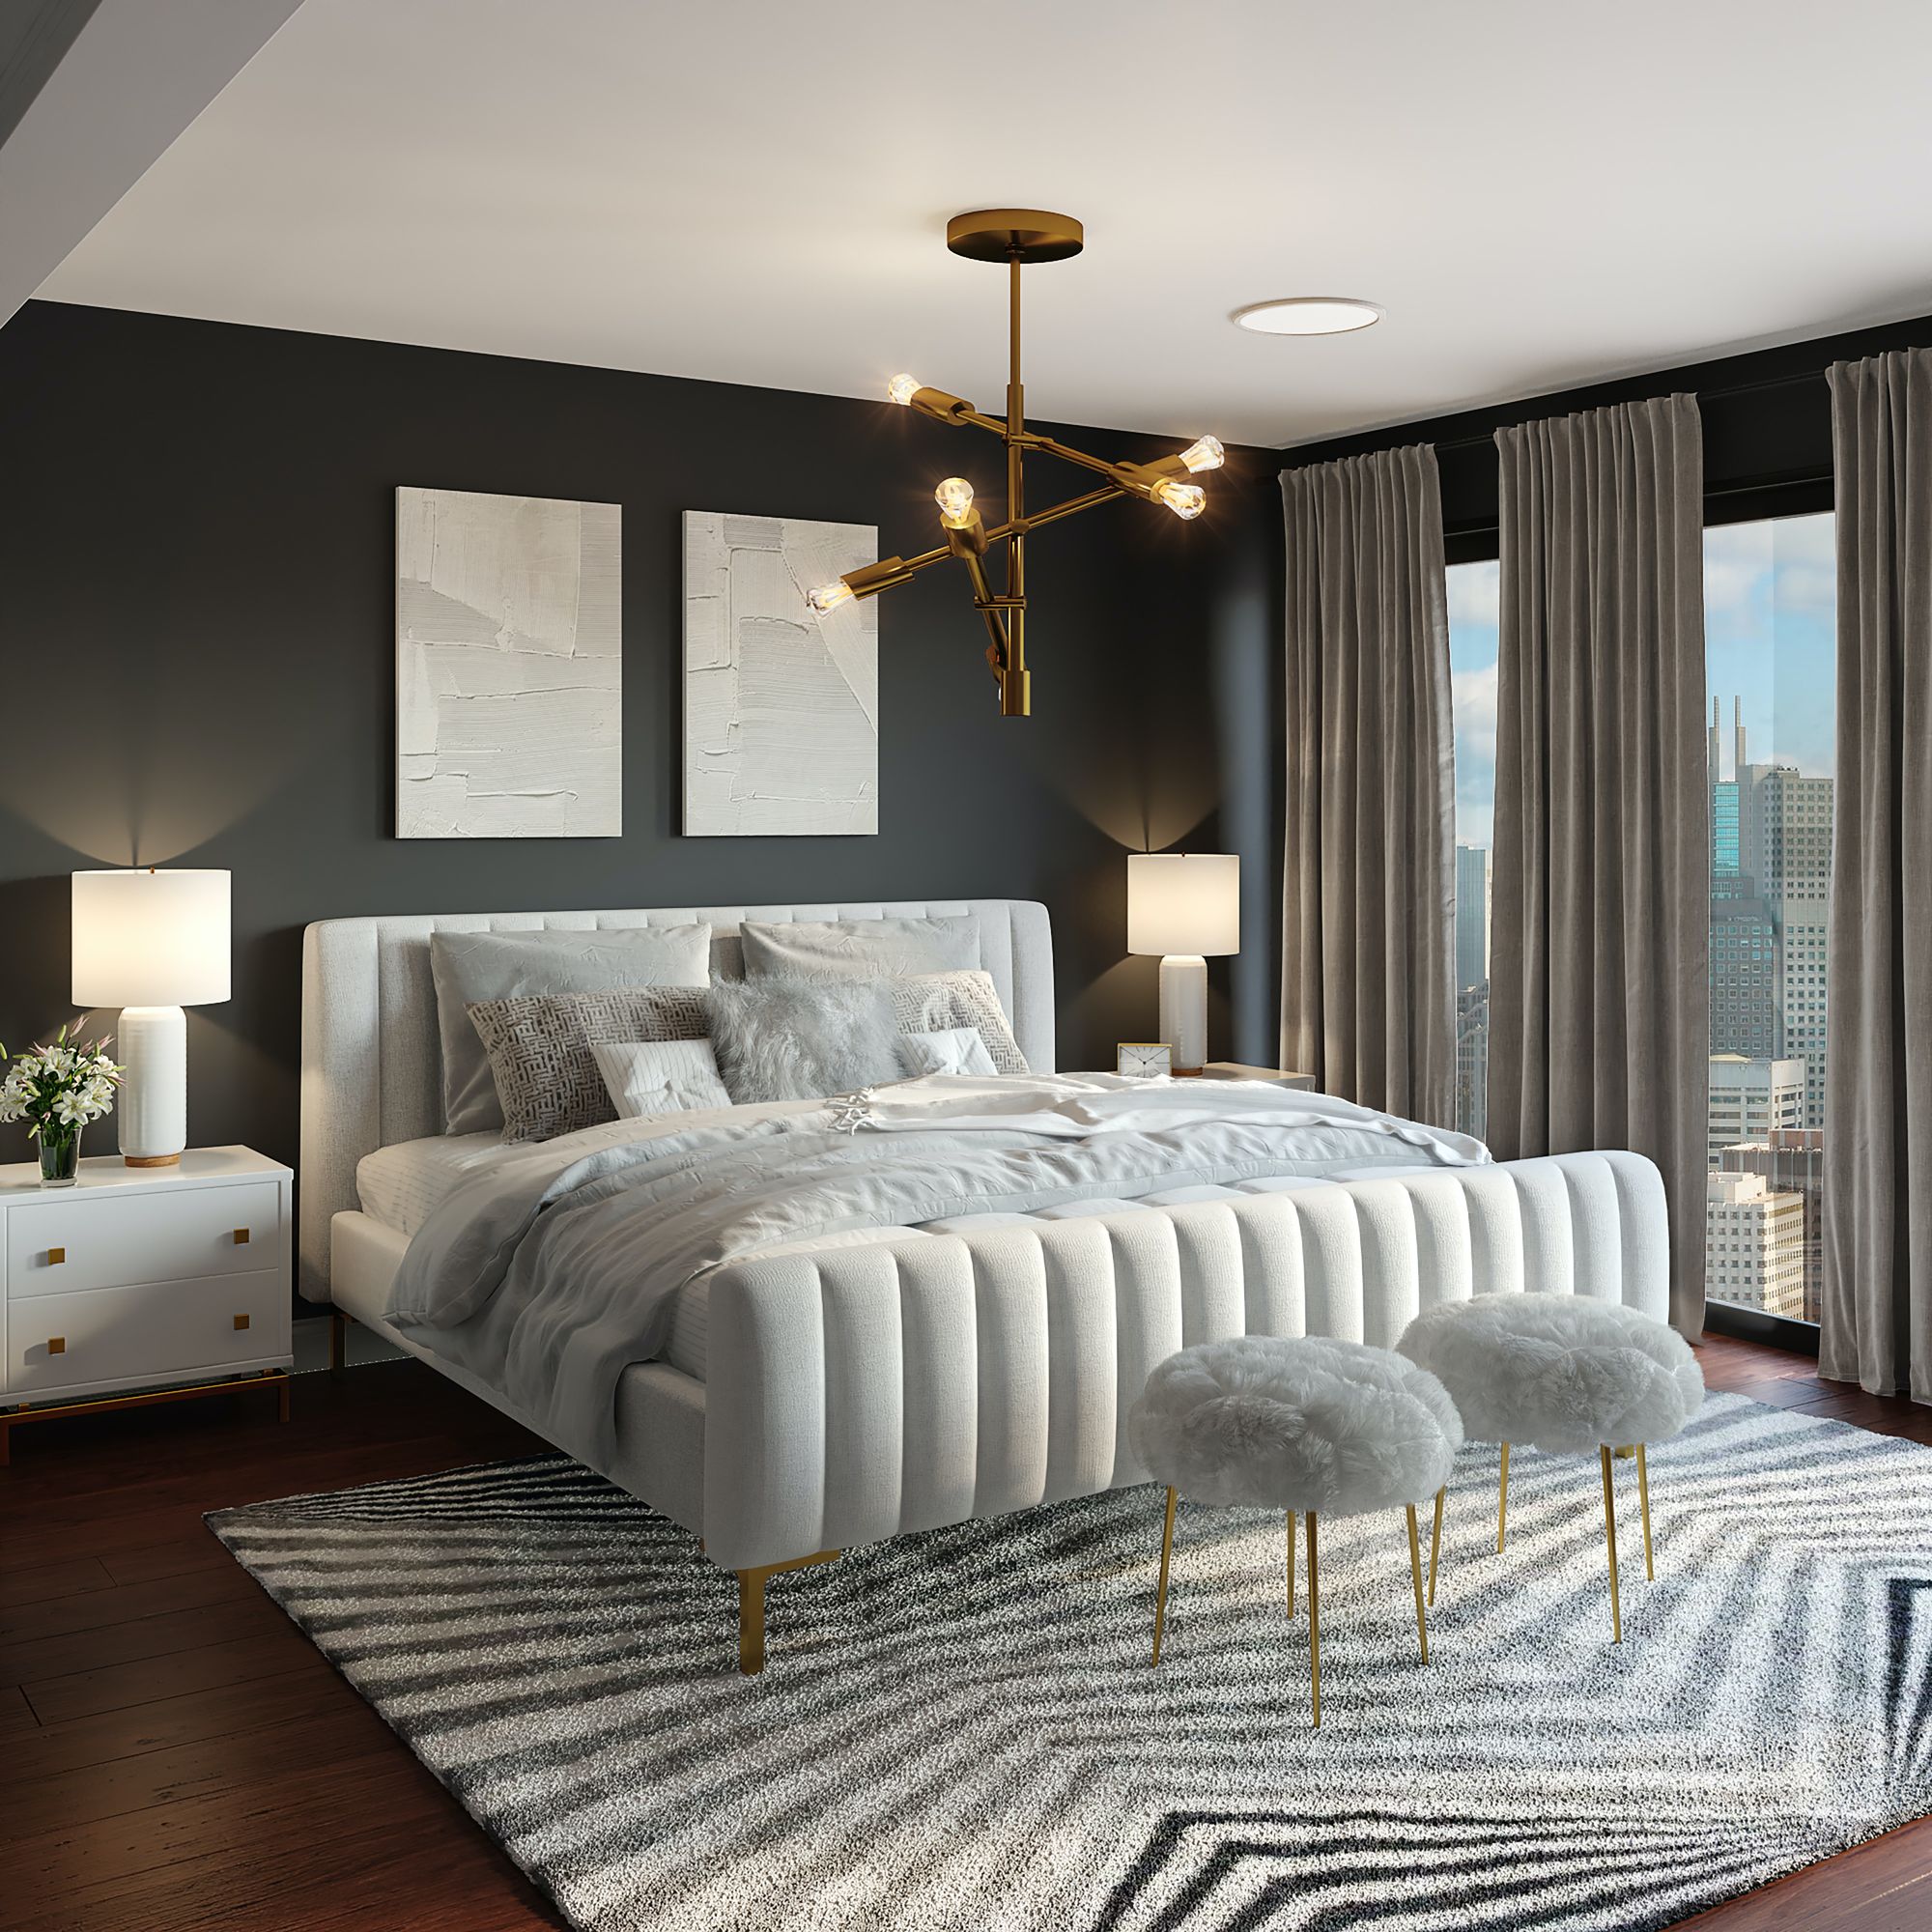 elegante diseño de dormitorio en blanco y negro con decoración dorada